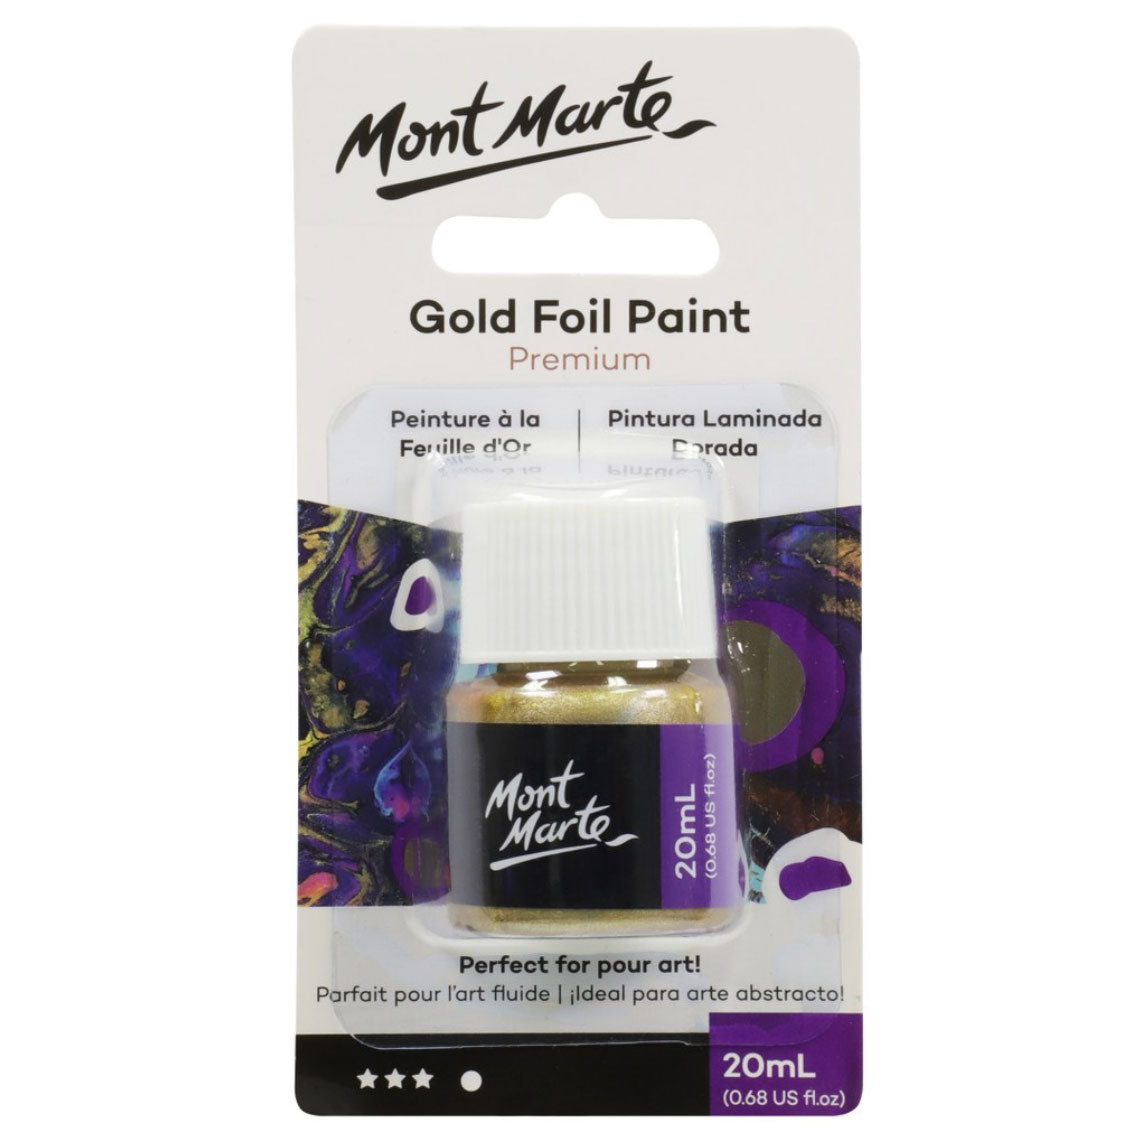 Mont Marte Premium Gold Foil Paint 20ml